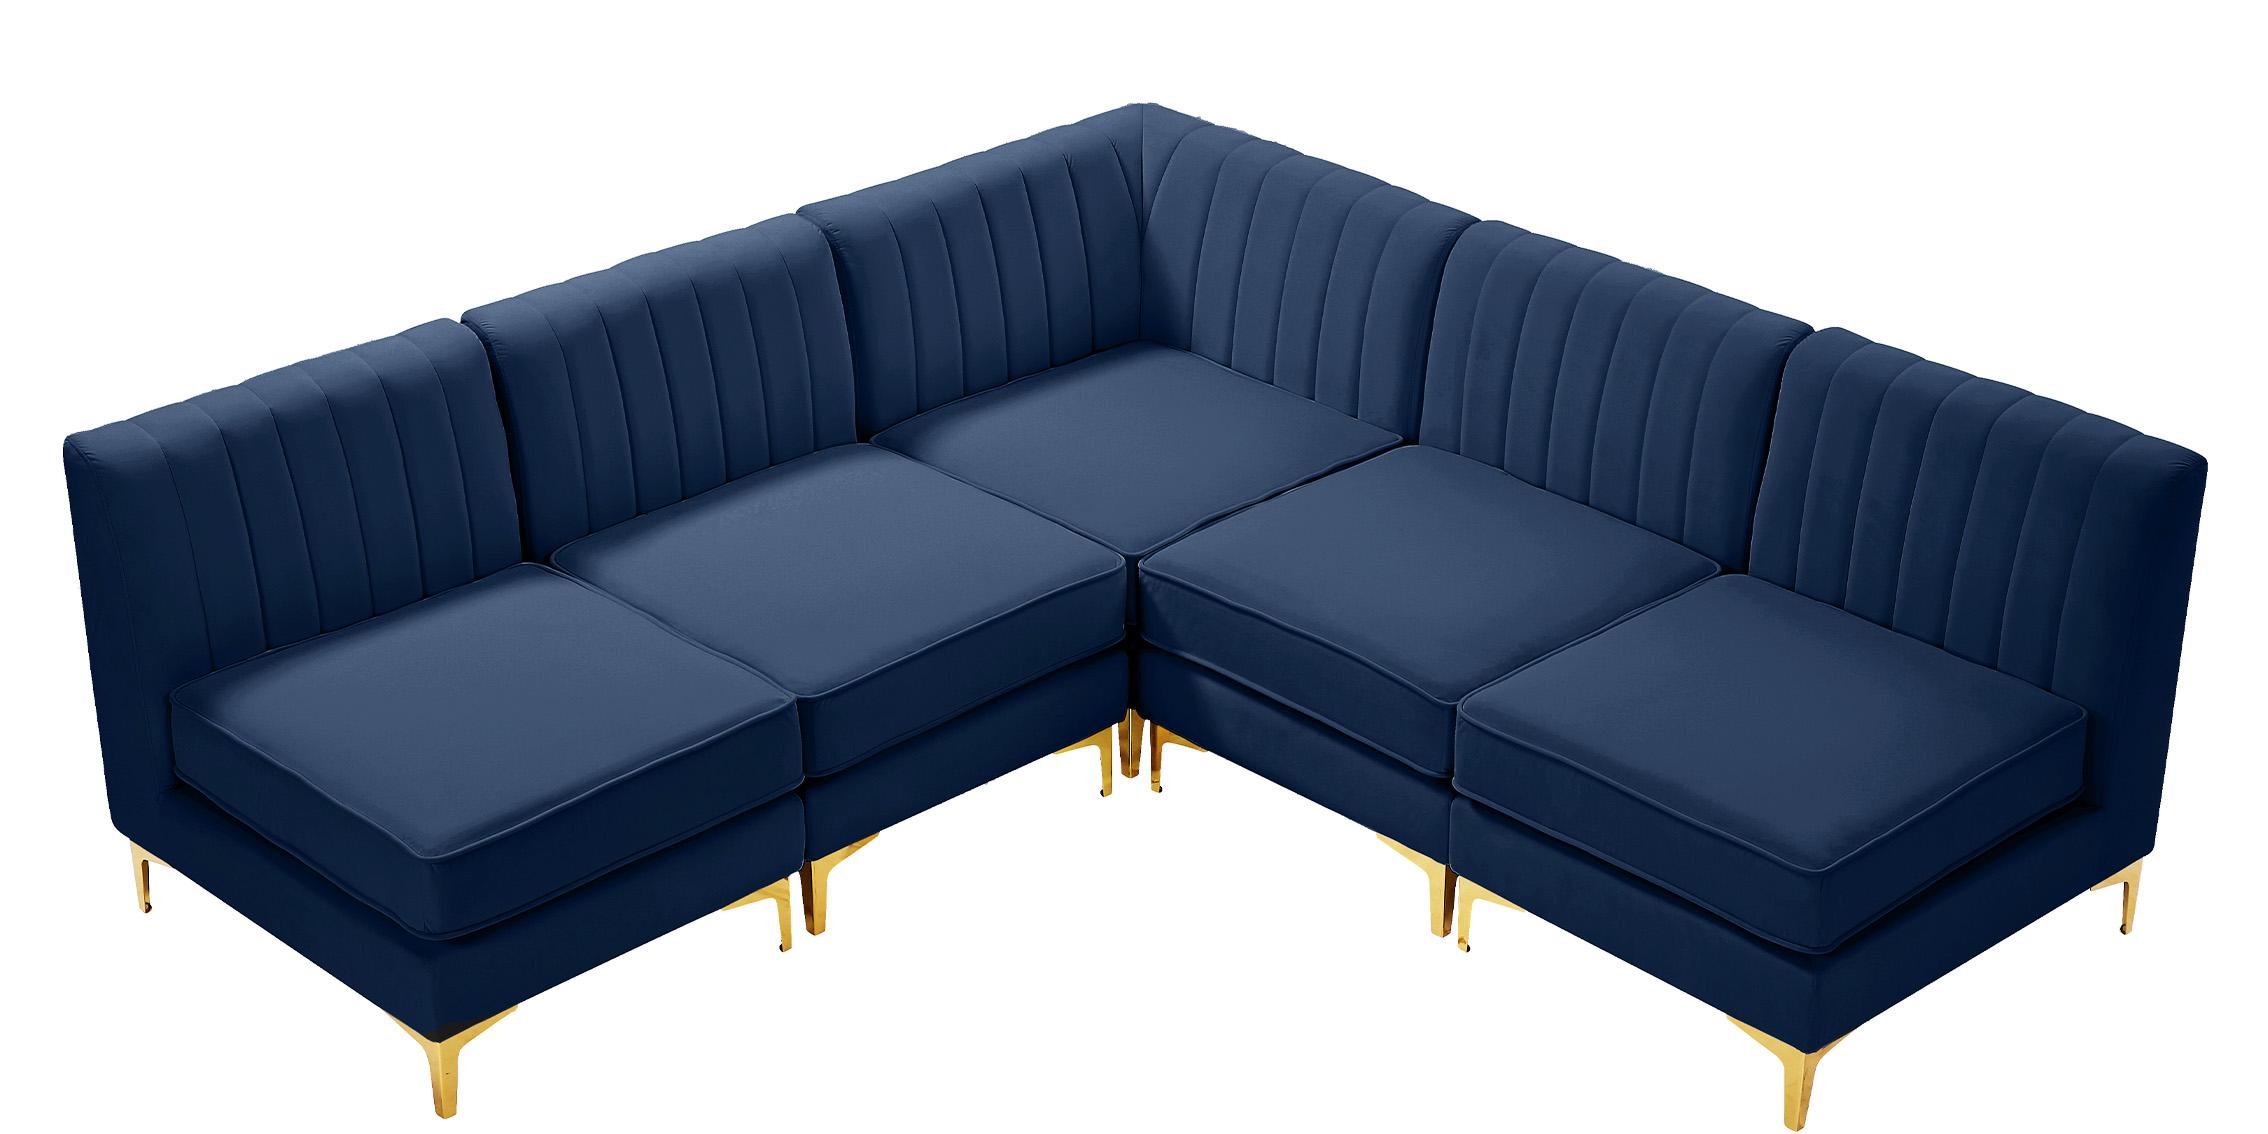 

    
Meridian Furniture ALINA 604Navy-Sec5A Modular Sectional Sofa Navy 604Navy-Sec5A
